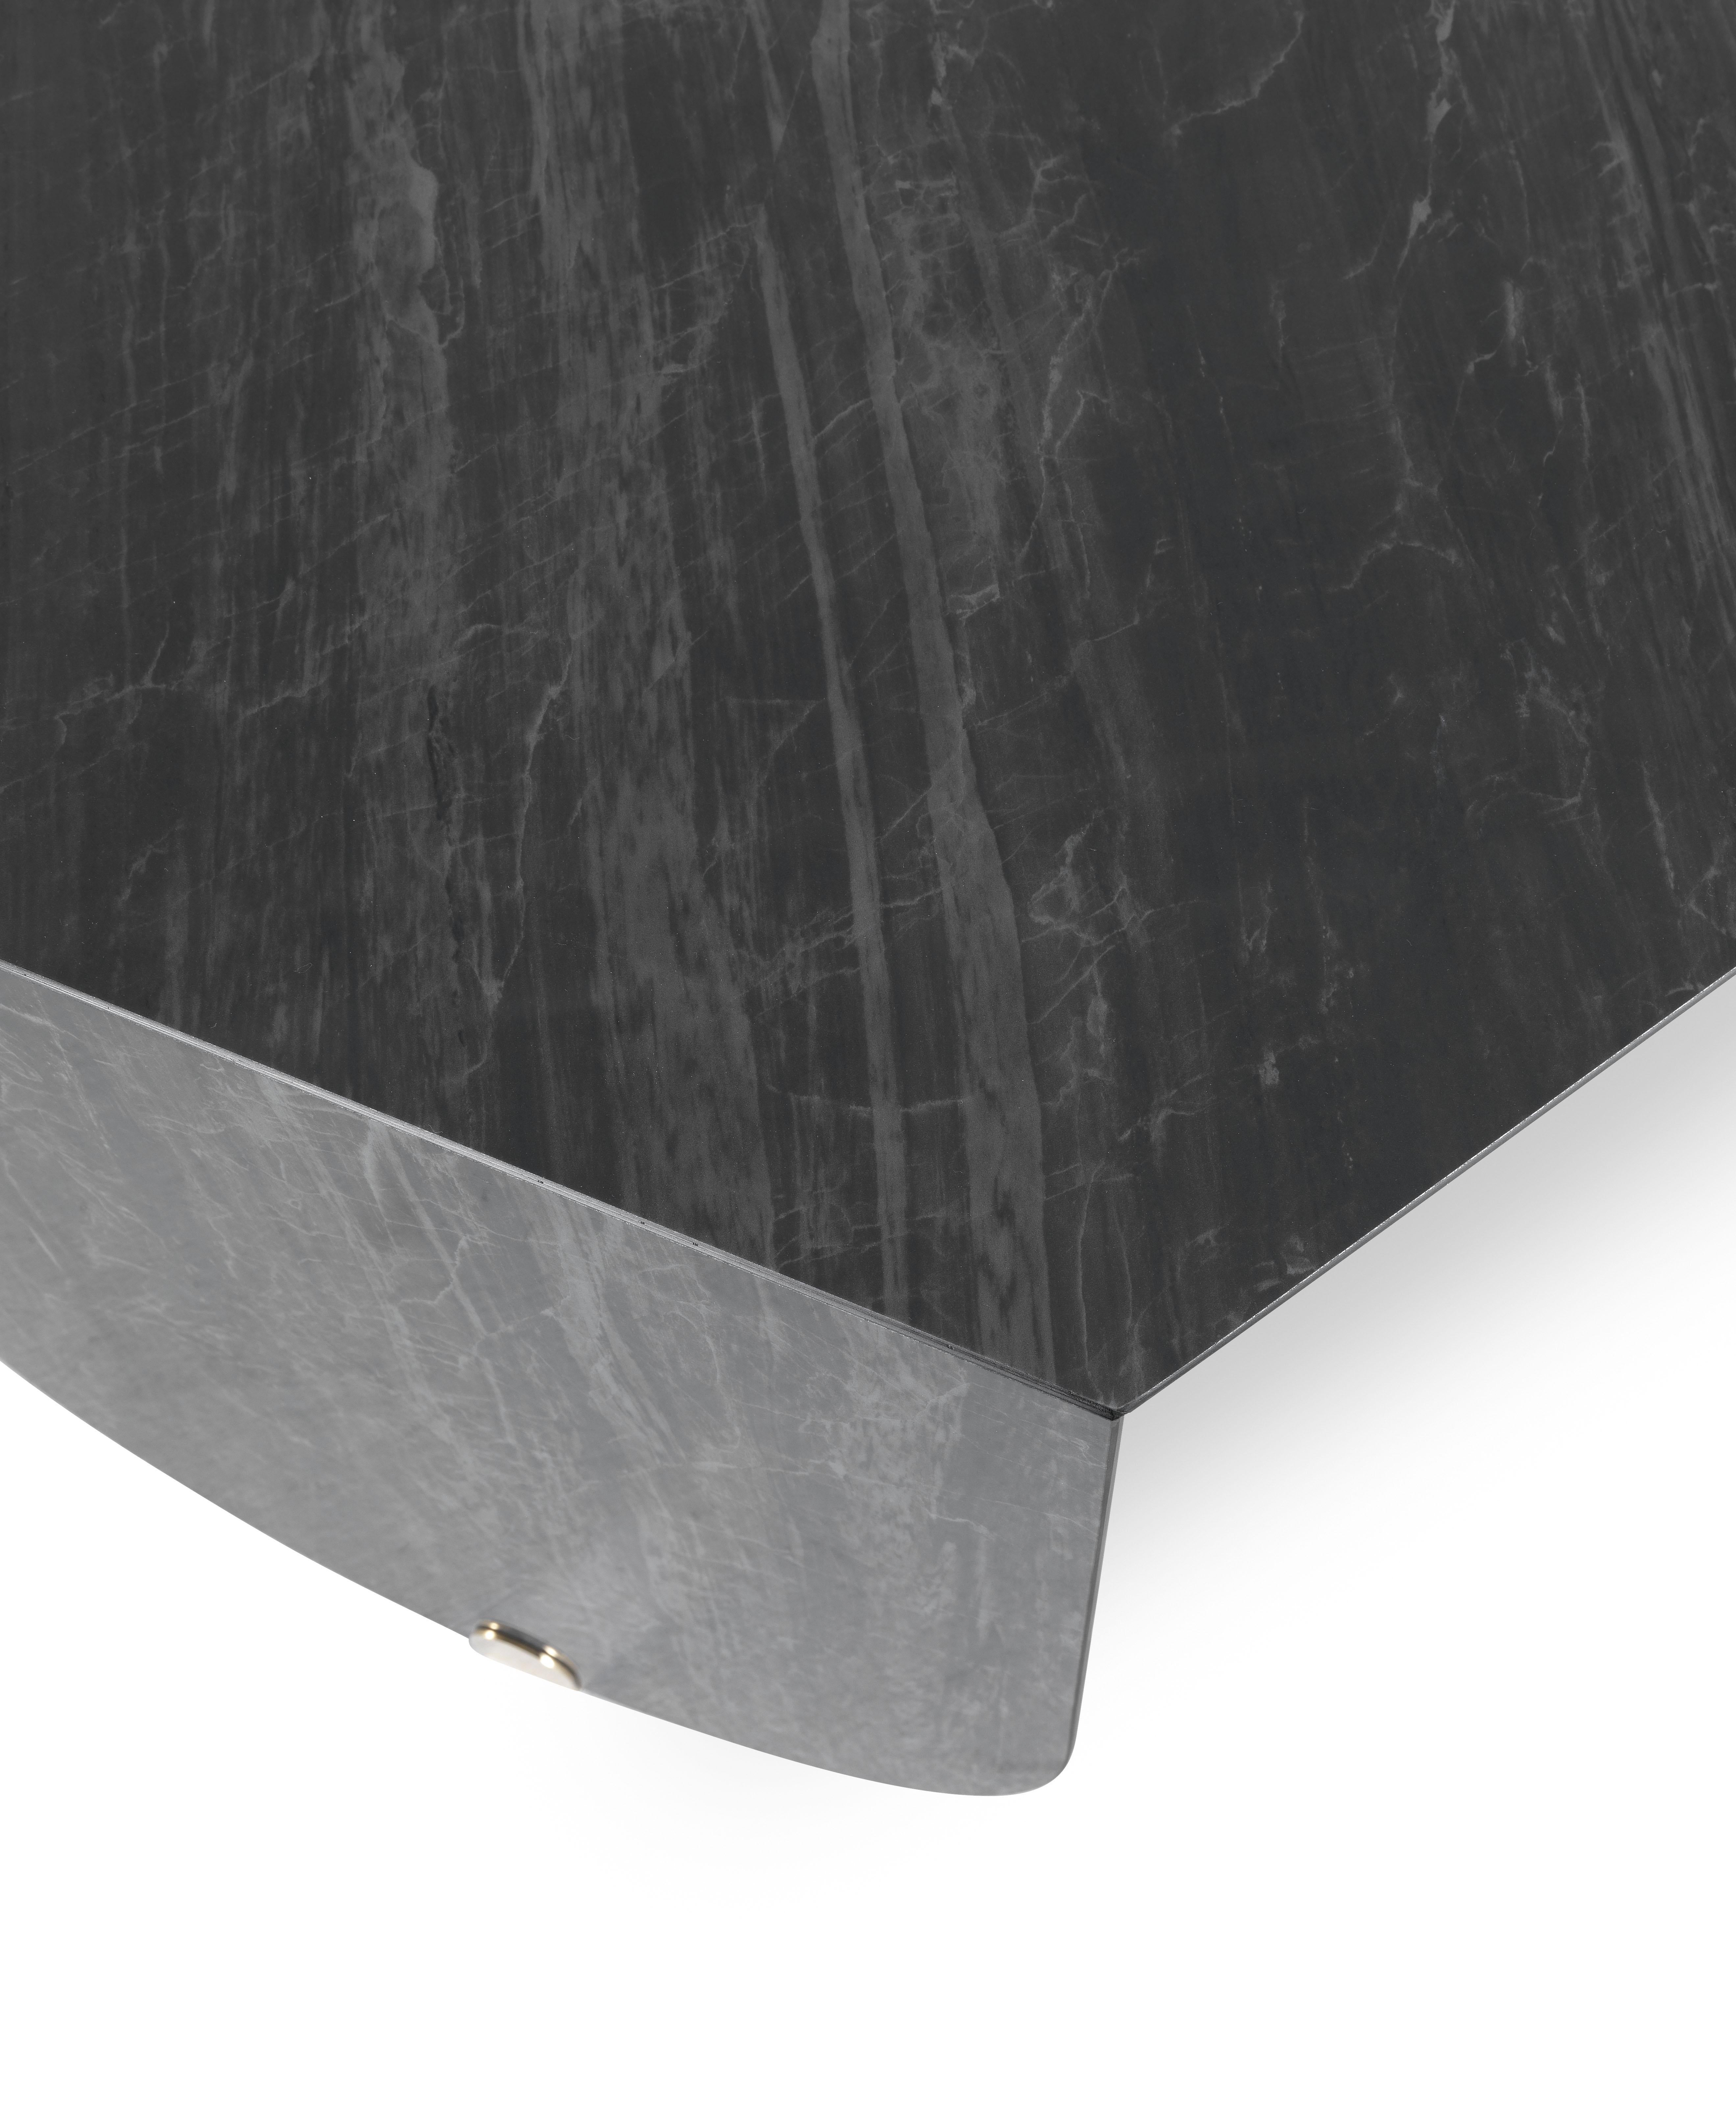 Der Inagua-Tisch, der in einem komplexen handwerklichen Verfahren aus Feinsteinzeug hergestellt wird, zeichnet sich durch die sechseckige Form der Platte aus, die im Kontrast zu den geschwungenen Linien der Beine steht und dem Ganzen eine besondere